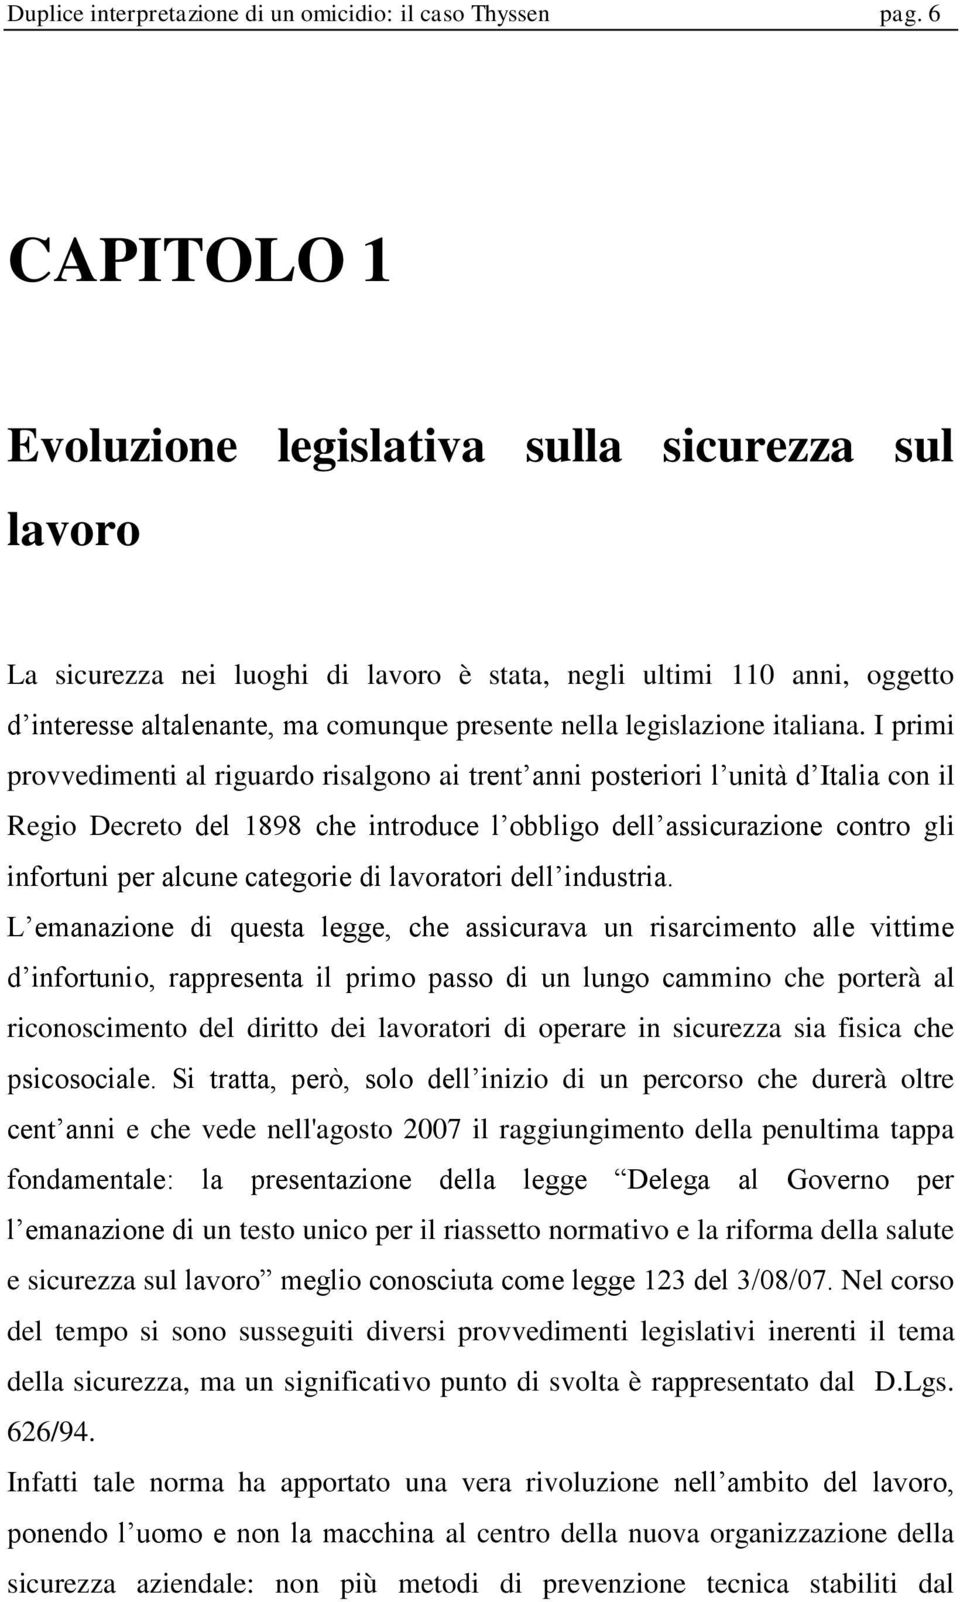 legislazione italiana.